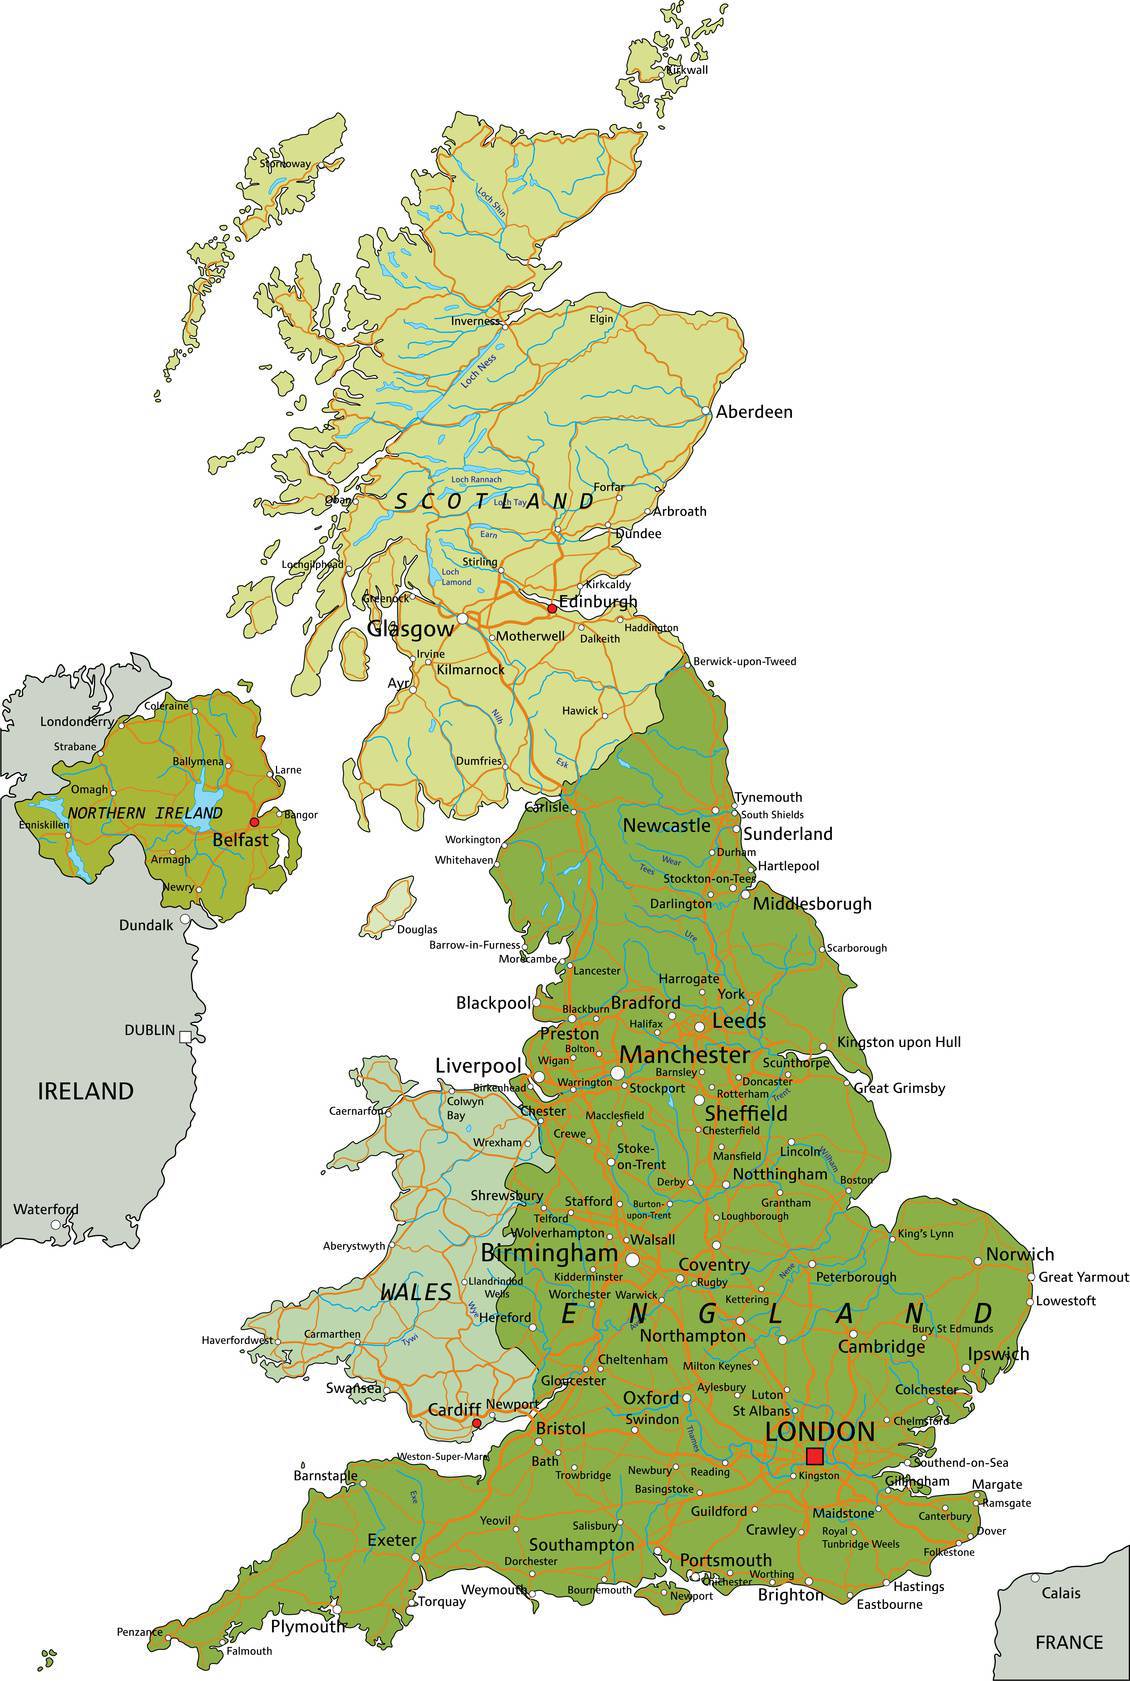 Plan de Londres & Carte du sud-est de l'Angleterre